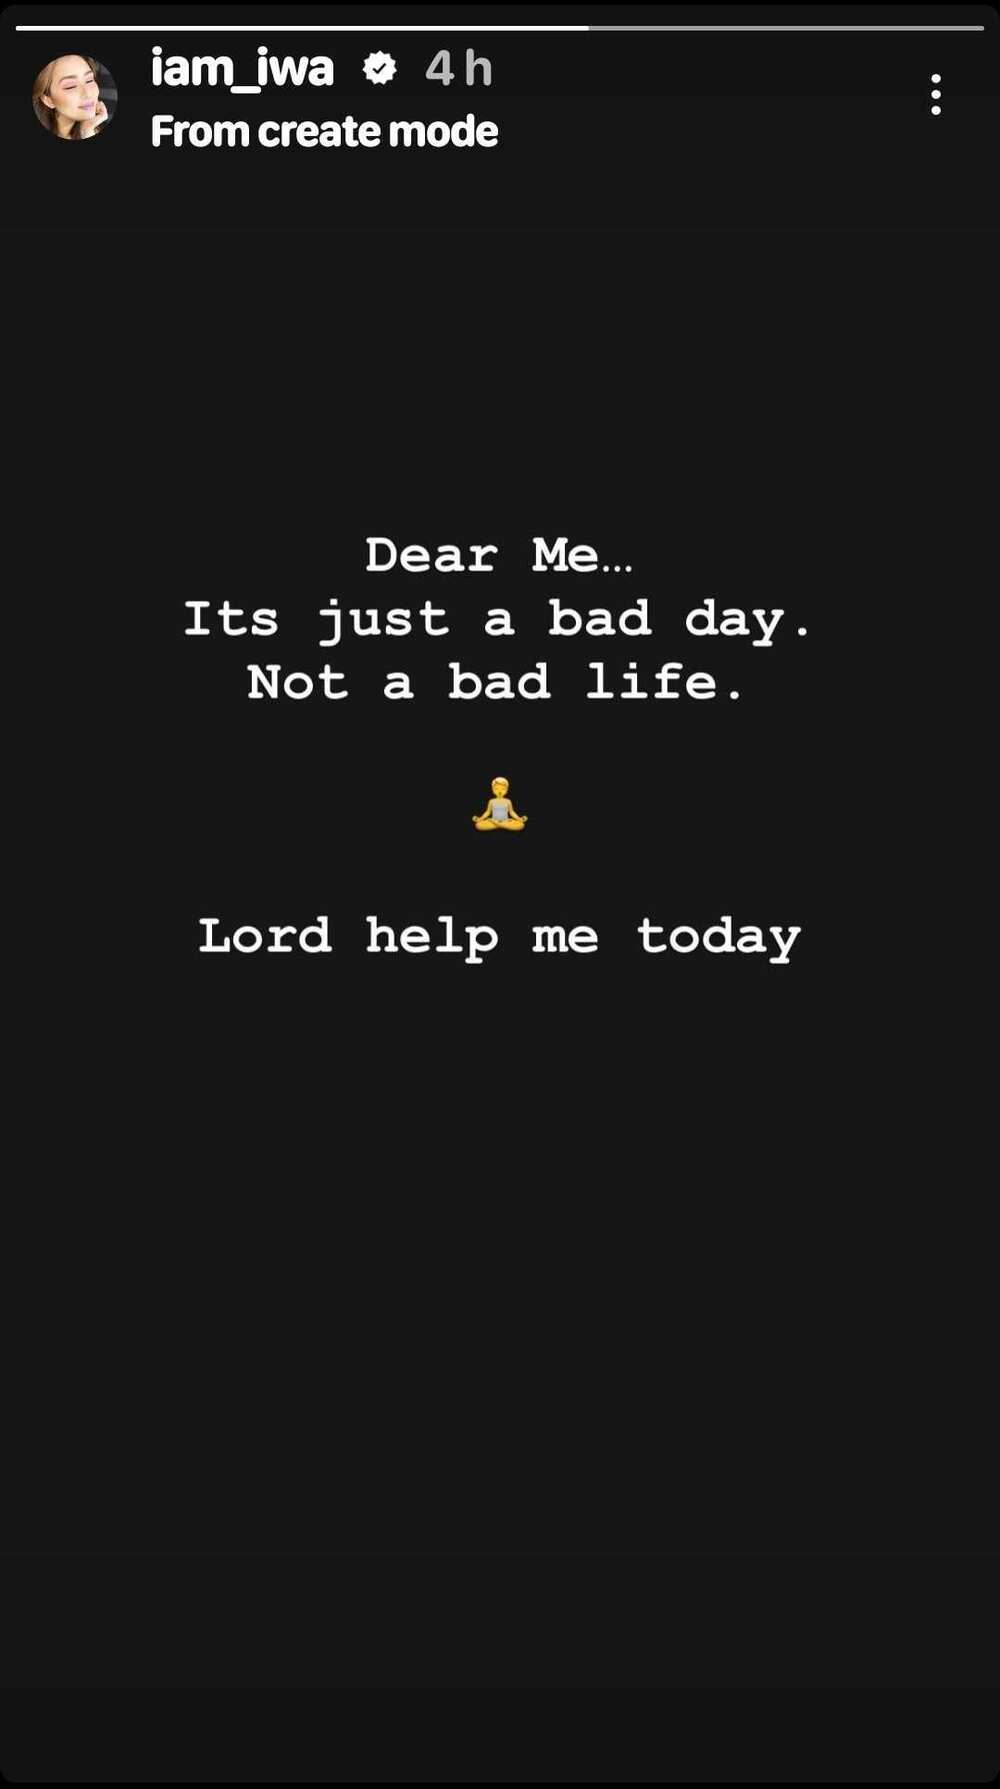 Iwa Moto, nag-post ukol sa pagkakaroon ng bad day: “Lord, help me today”